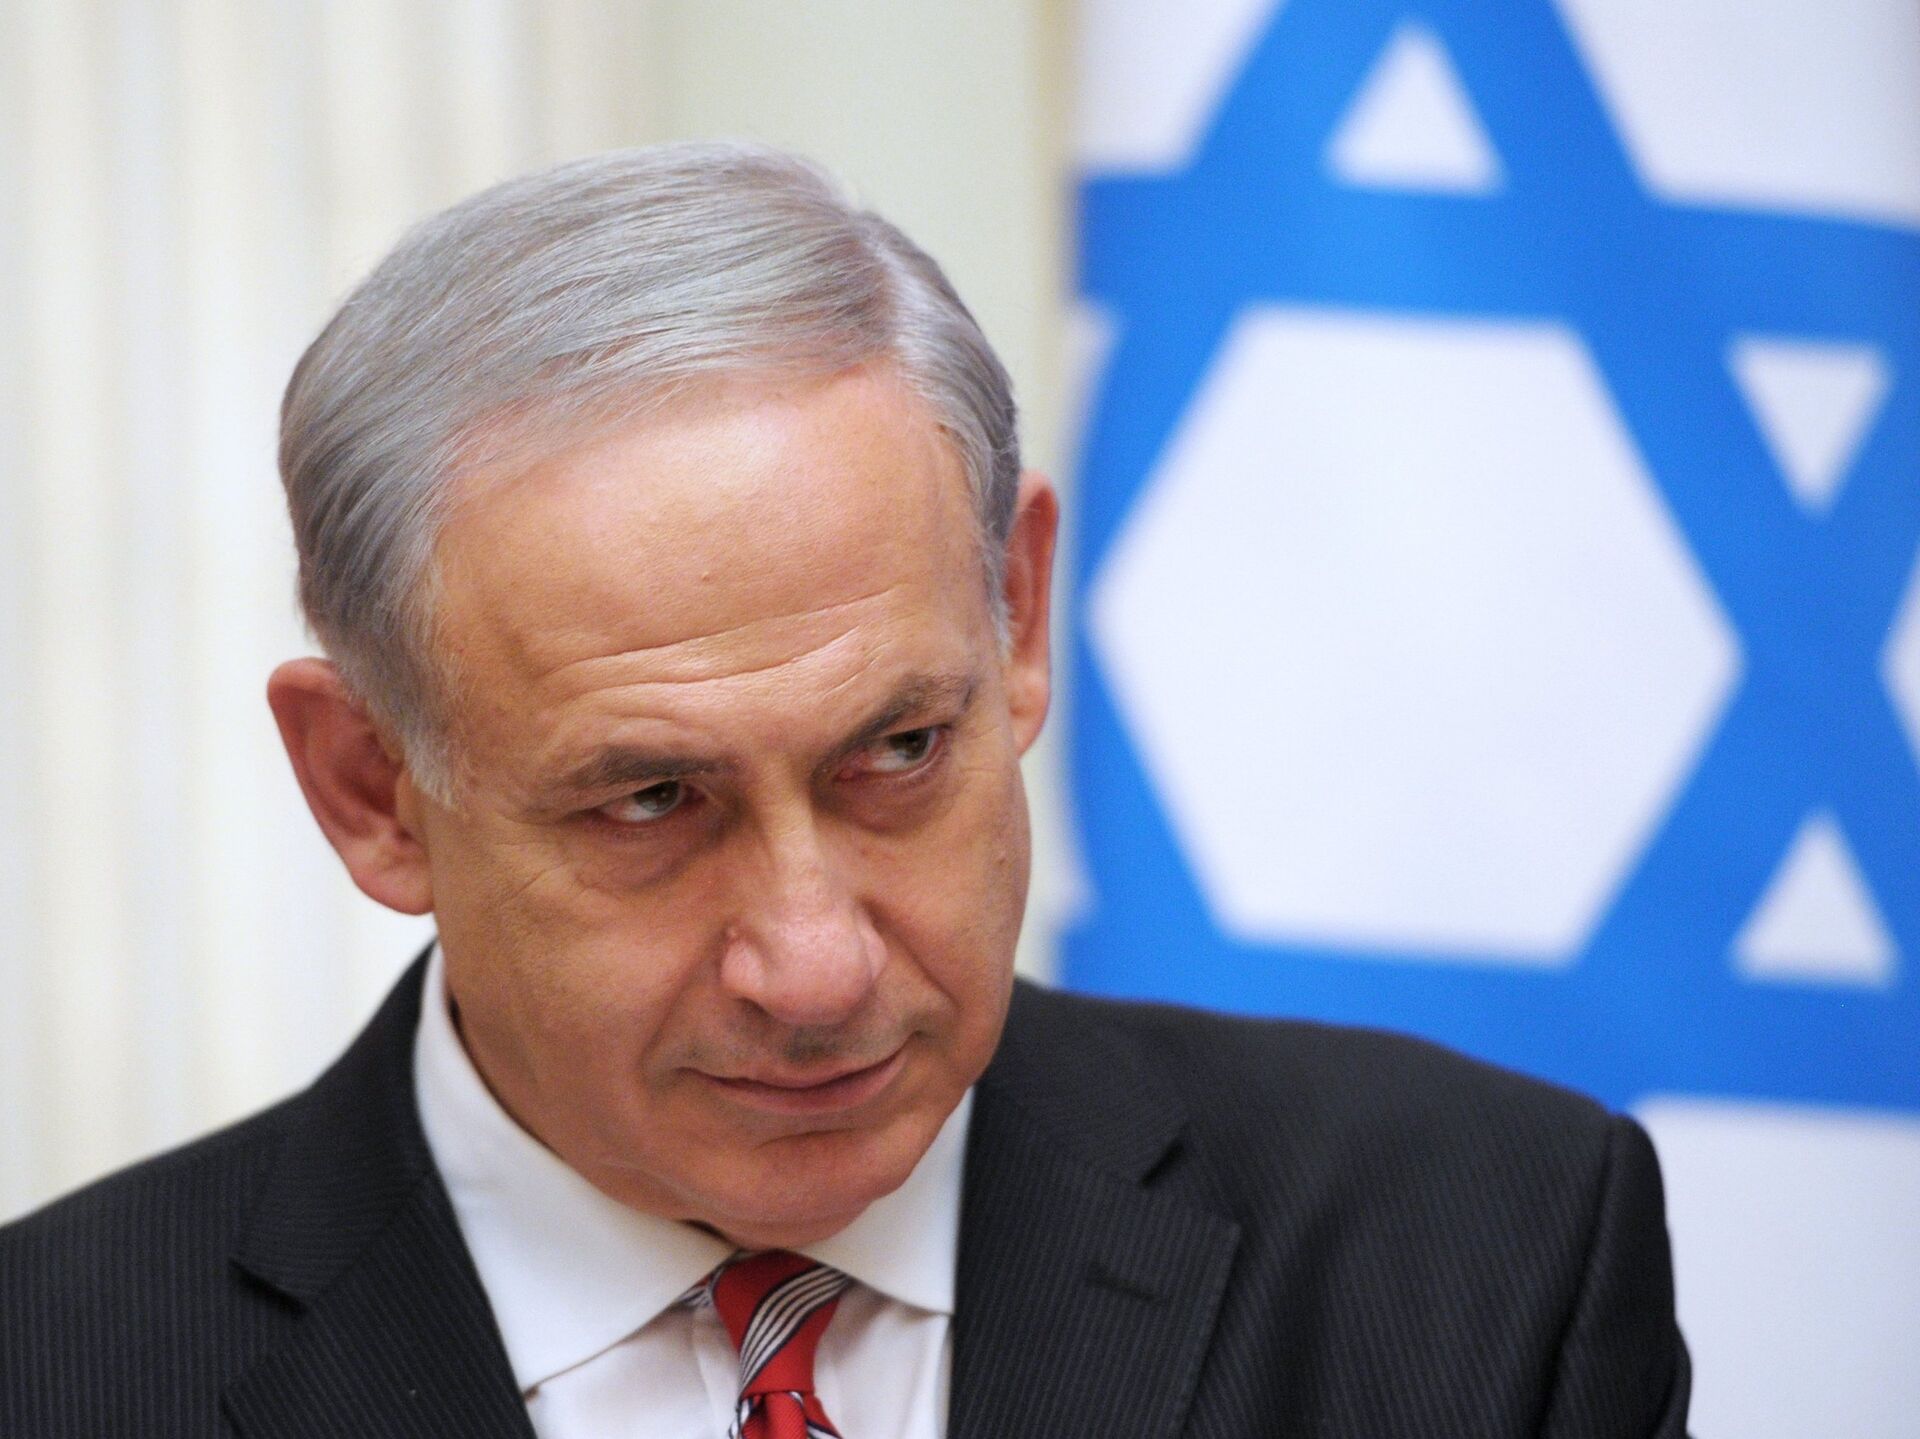 以色列总理称拒绝哈马斯提出的停火要求-搜狐大视野-搜狐新闻